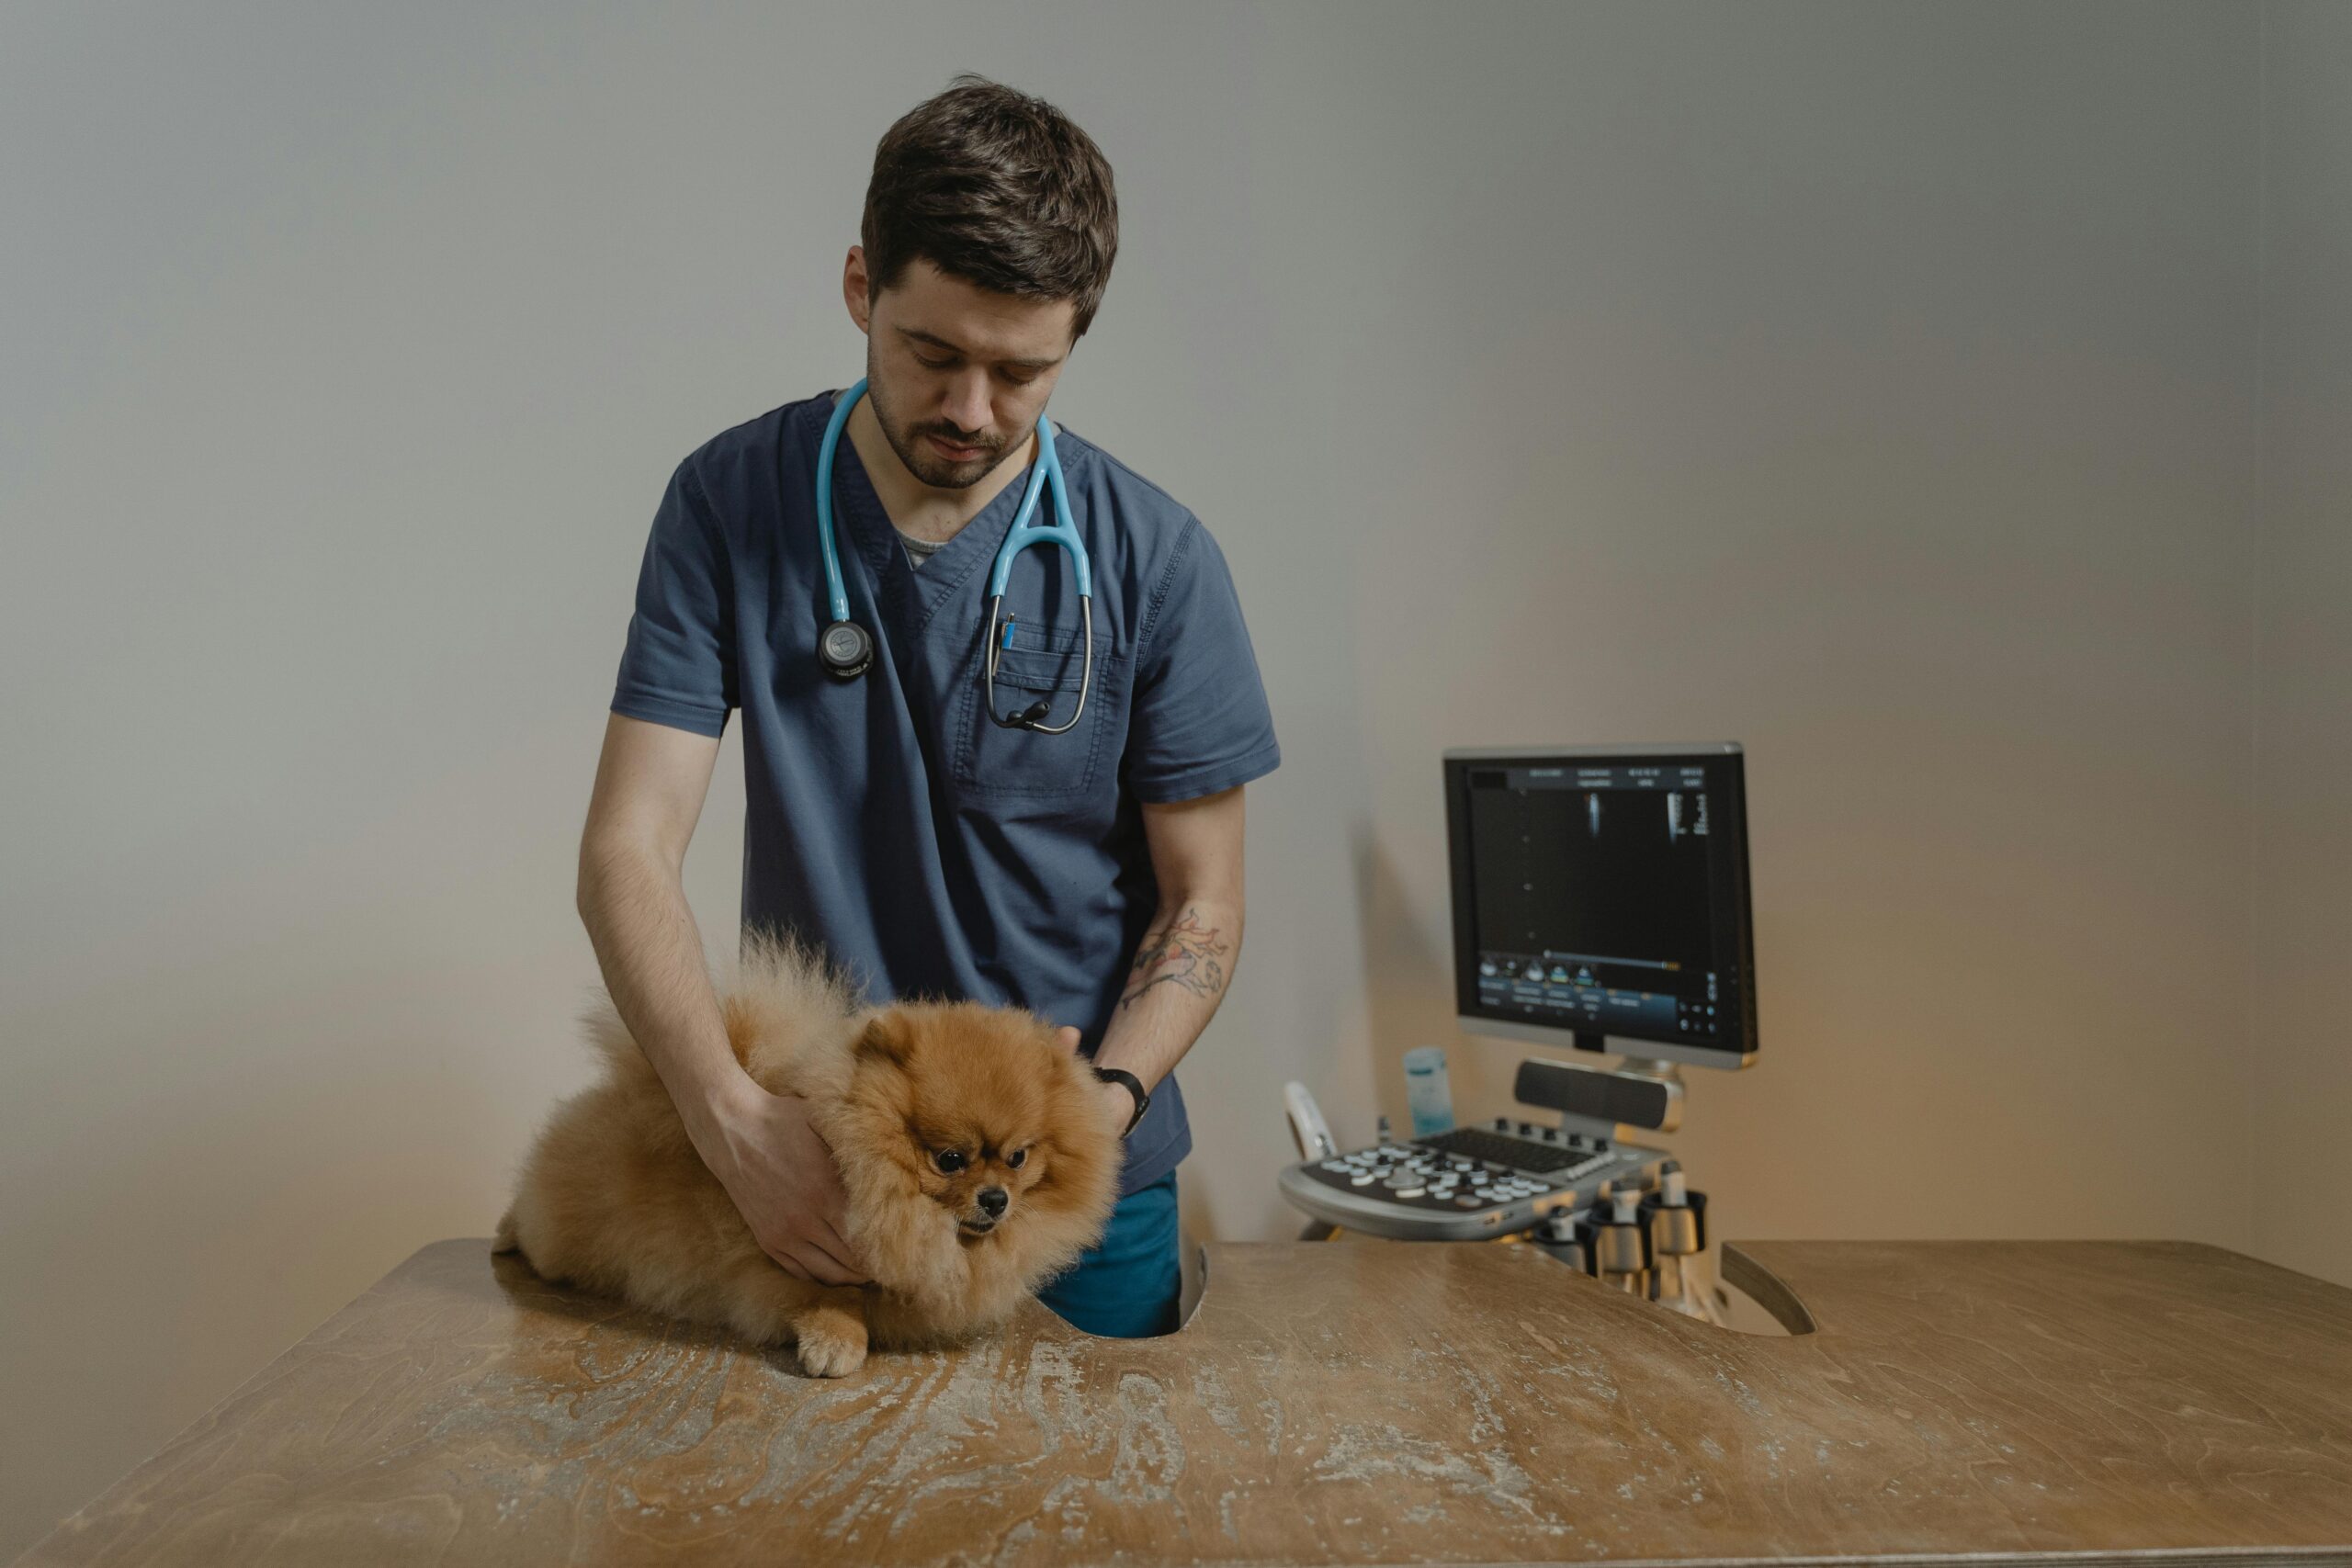 OC Veterinary Assistant School - Veterinary Assistant Helping Veterinary Technician Examine Dogs Ear